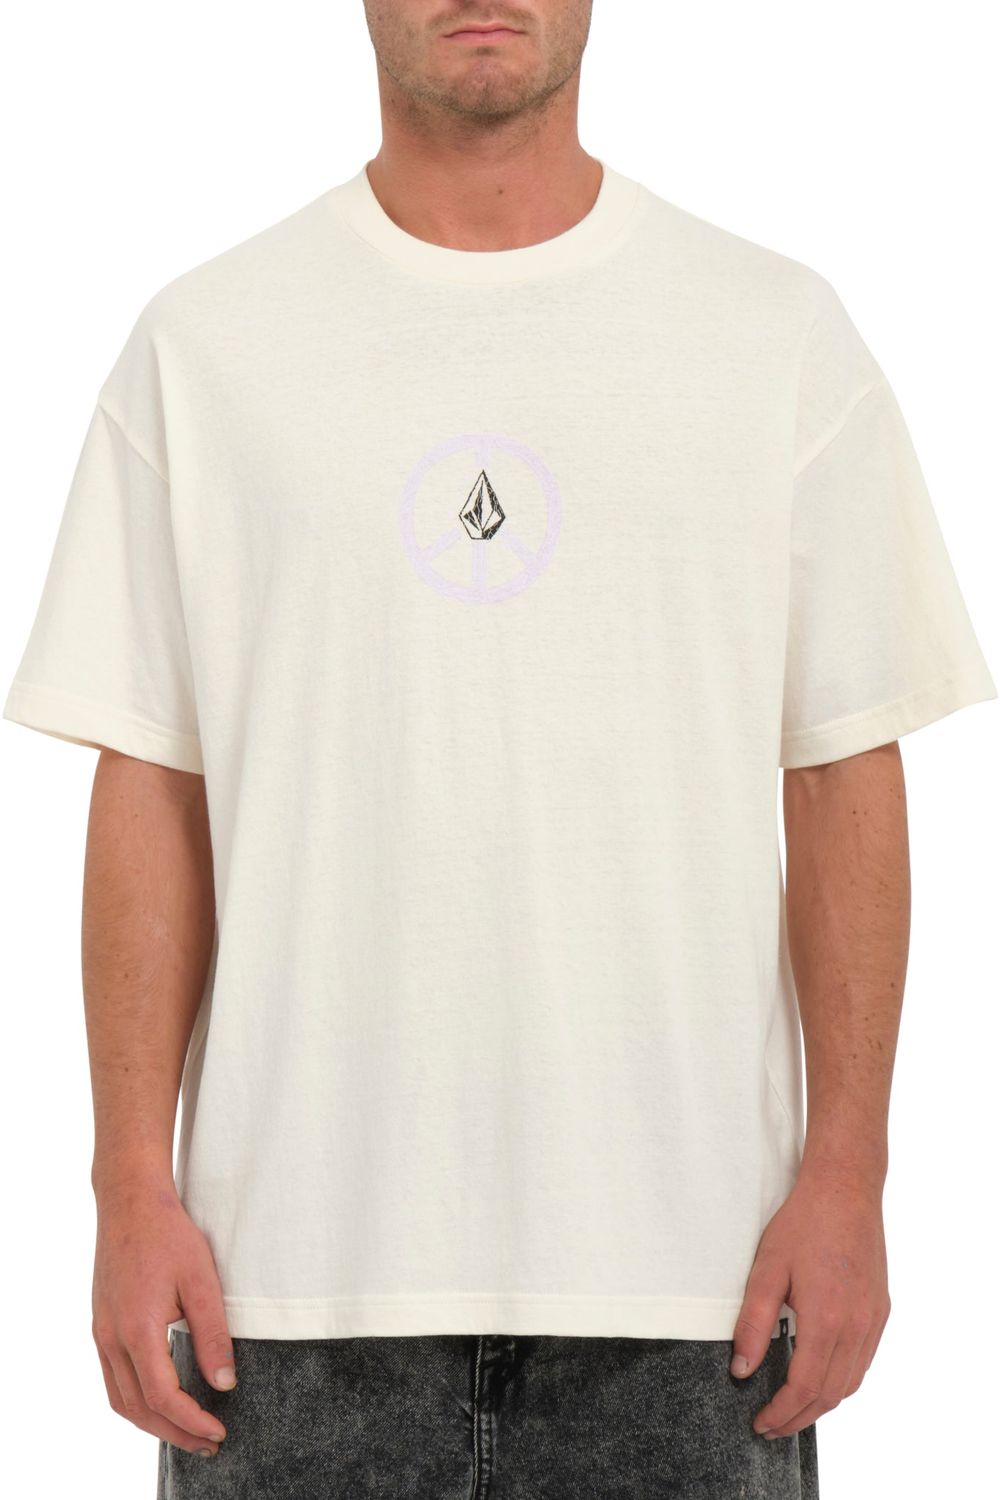 Volcom Breakpeace Lse Short Sleeve T-Shirt Dirty White